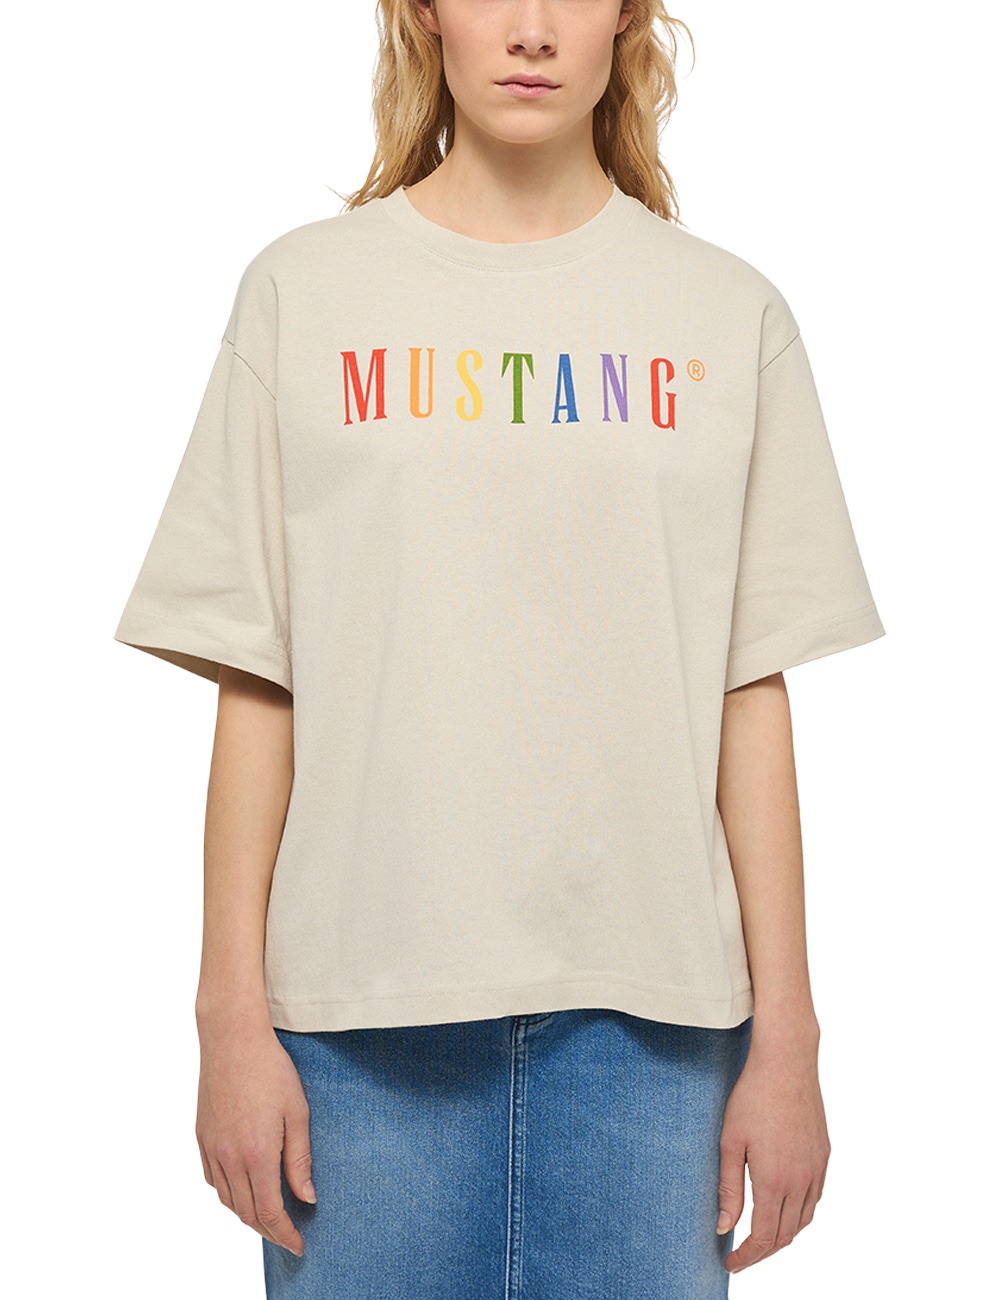 OTTOversand »Mustang Kurzarmshirt T-Shirt T-Shirt« bei MUSTANG